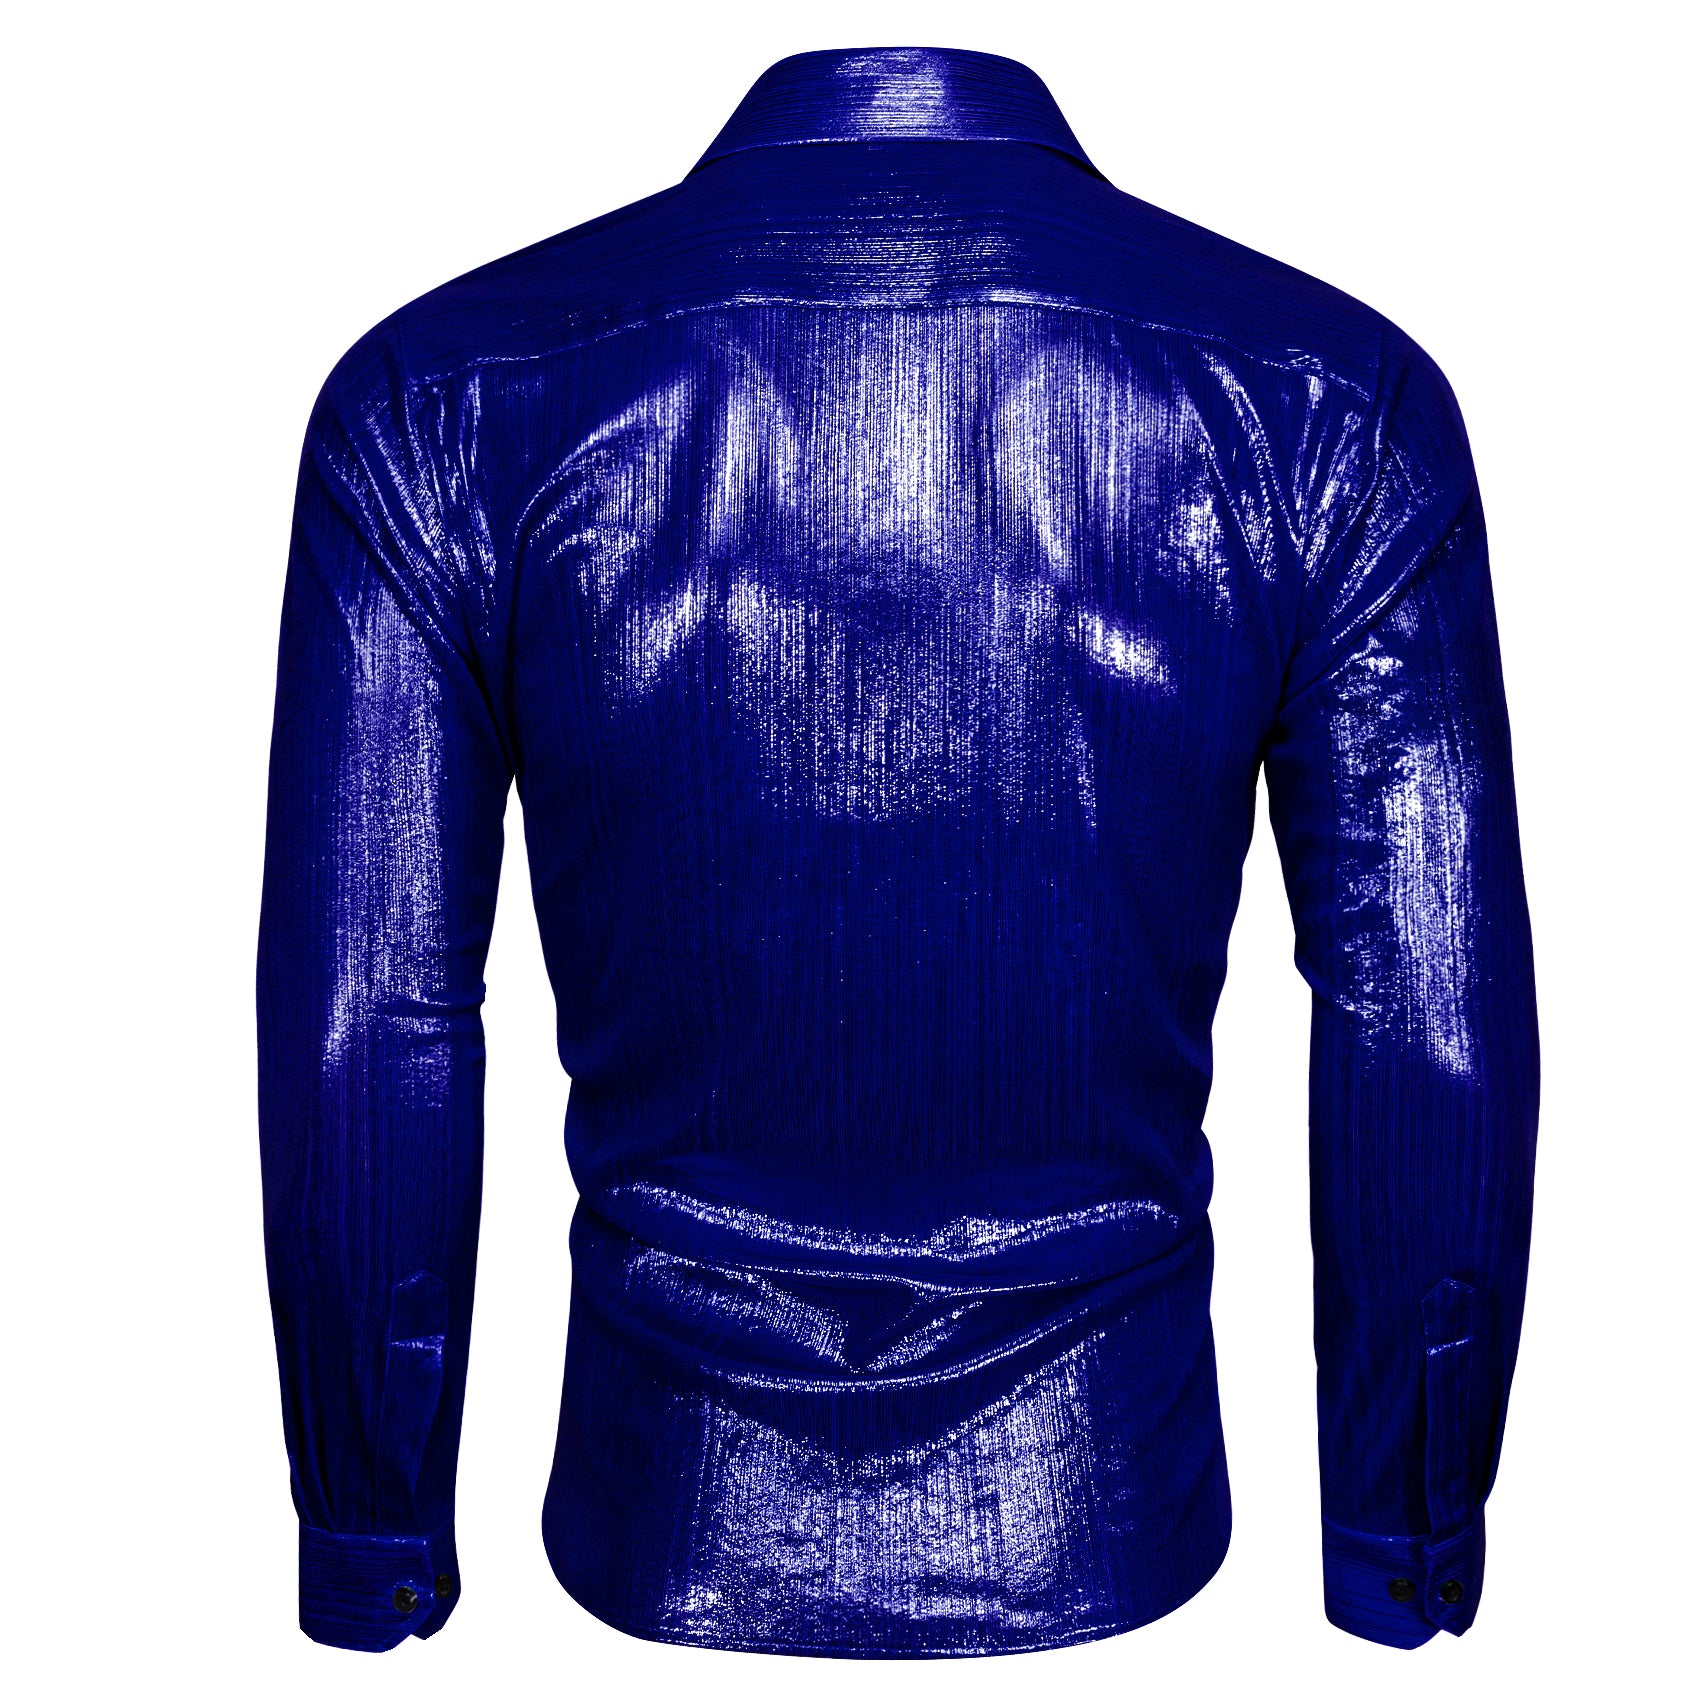 Barry.wang Sapphire Blue Solid Silk Shirt